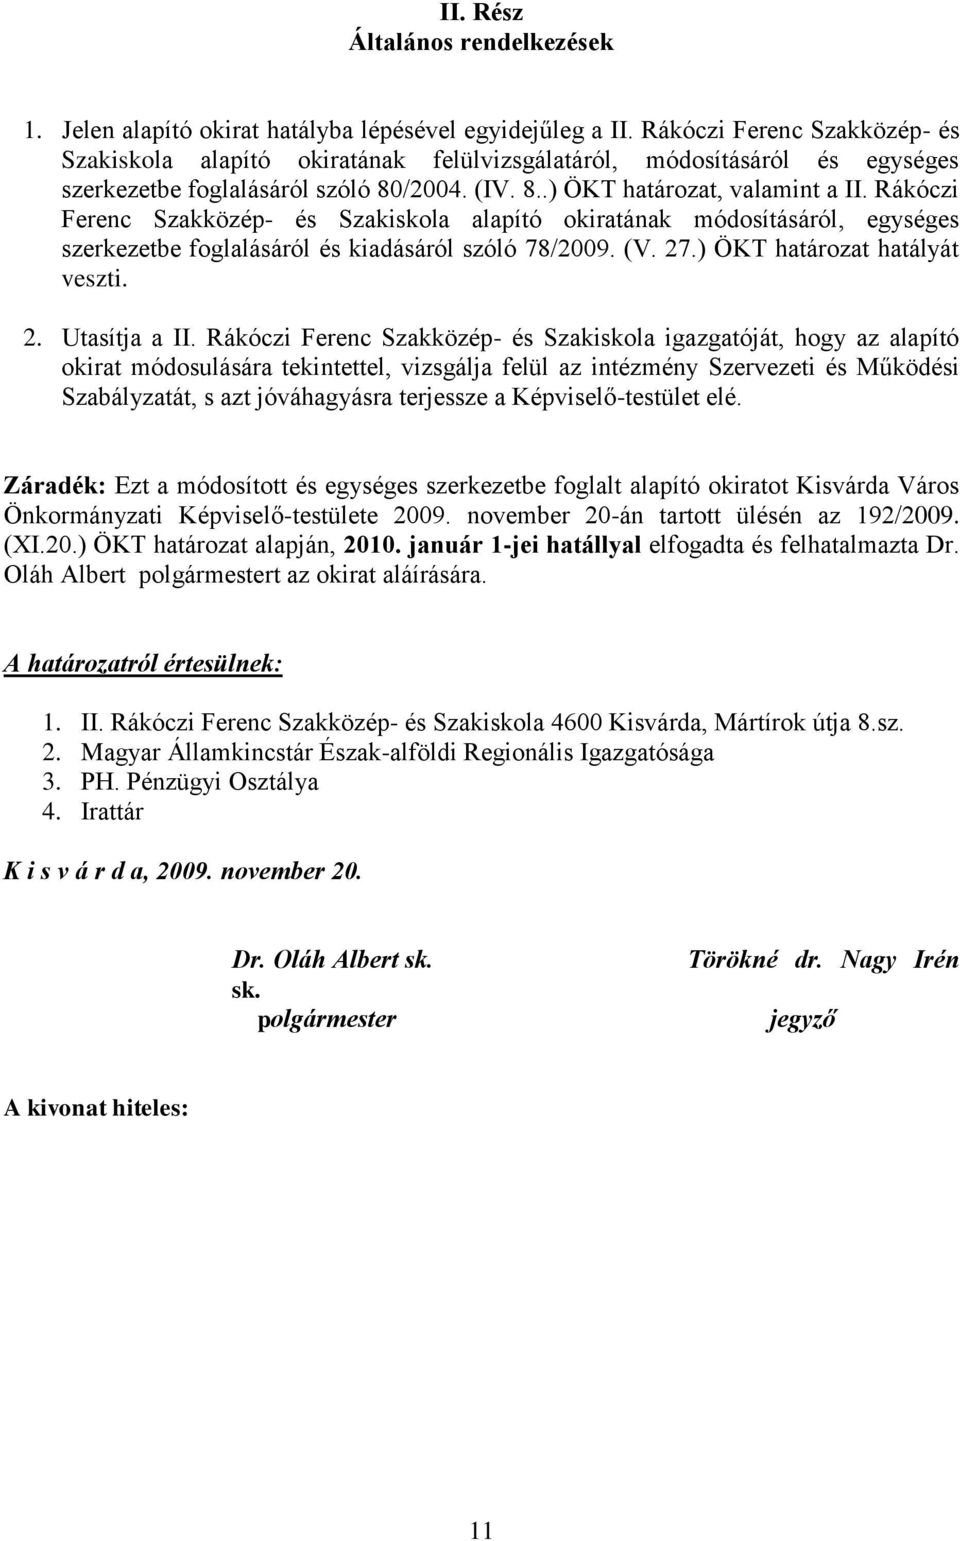 Rákóczi Ferenc Szakközép- és Szakiskola alapító okiratának módosításáról, egységes szerkezetbe foglalásáról és kiadásáról szóló 78/2009. (V. 27.) ÖKT határozat hatályát veszti. 2. Utasítja a II.